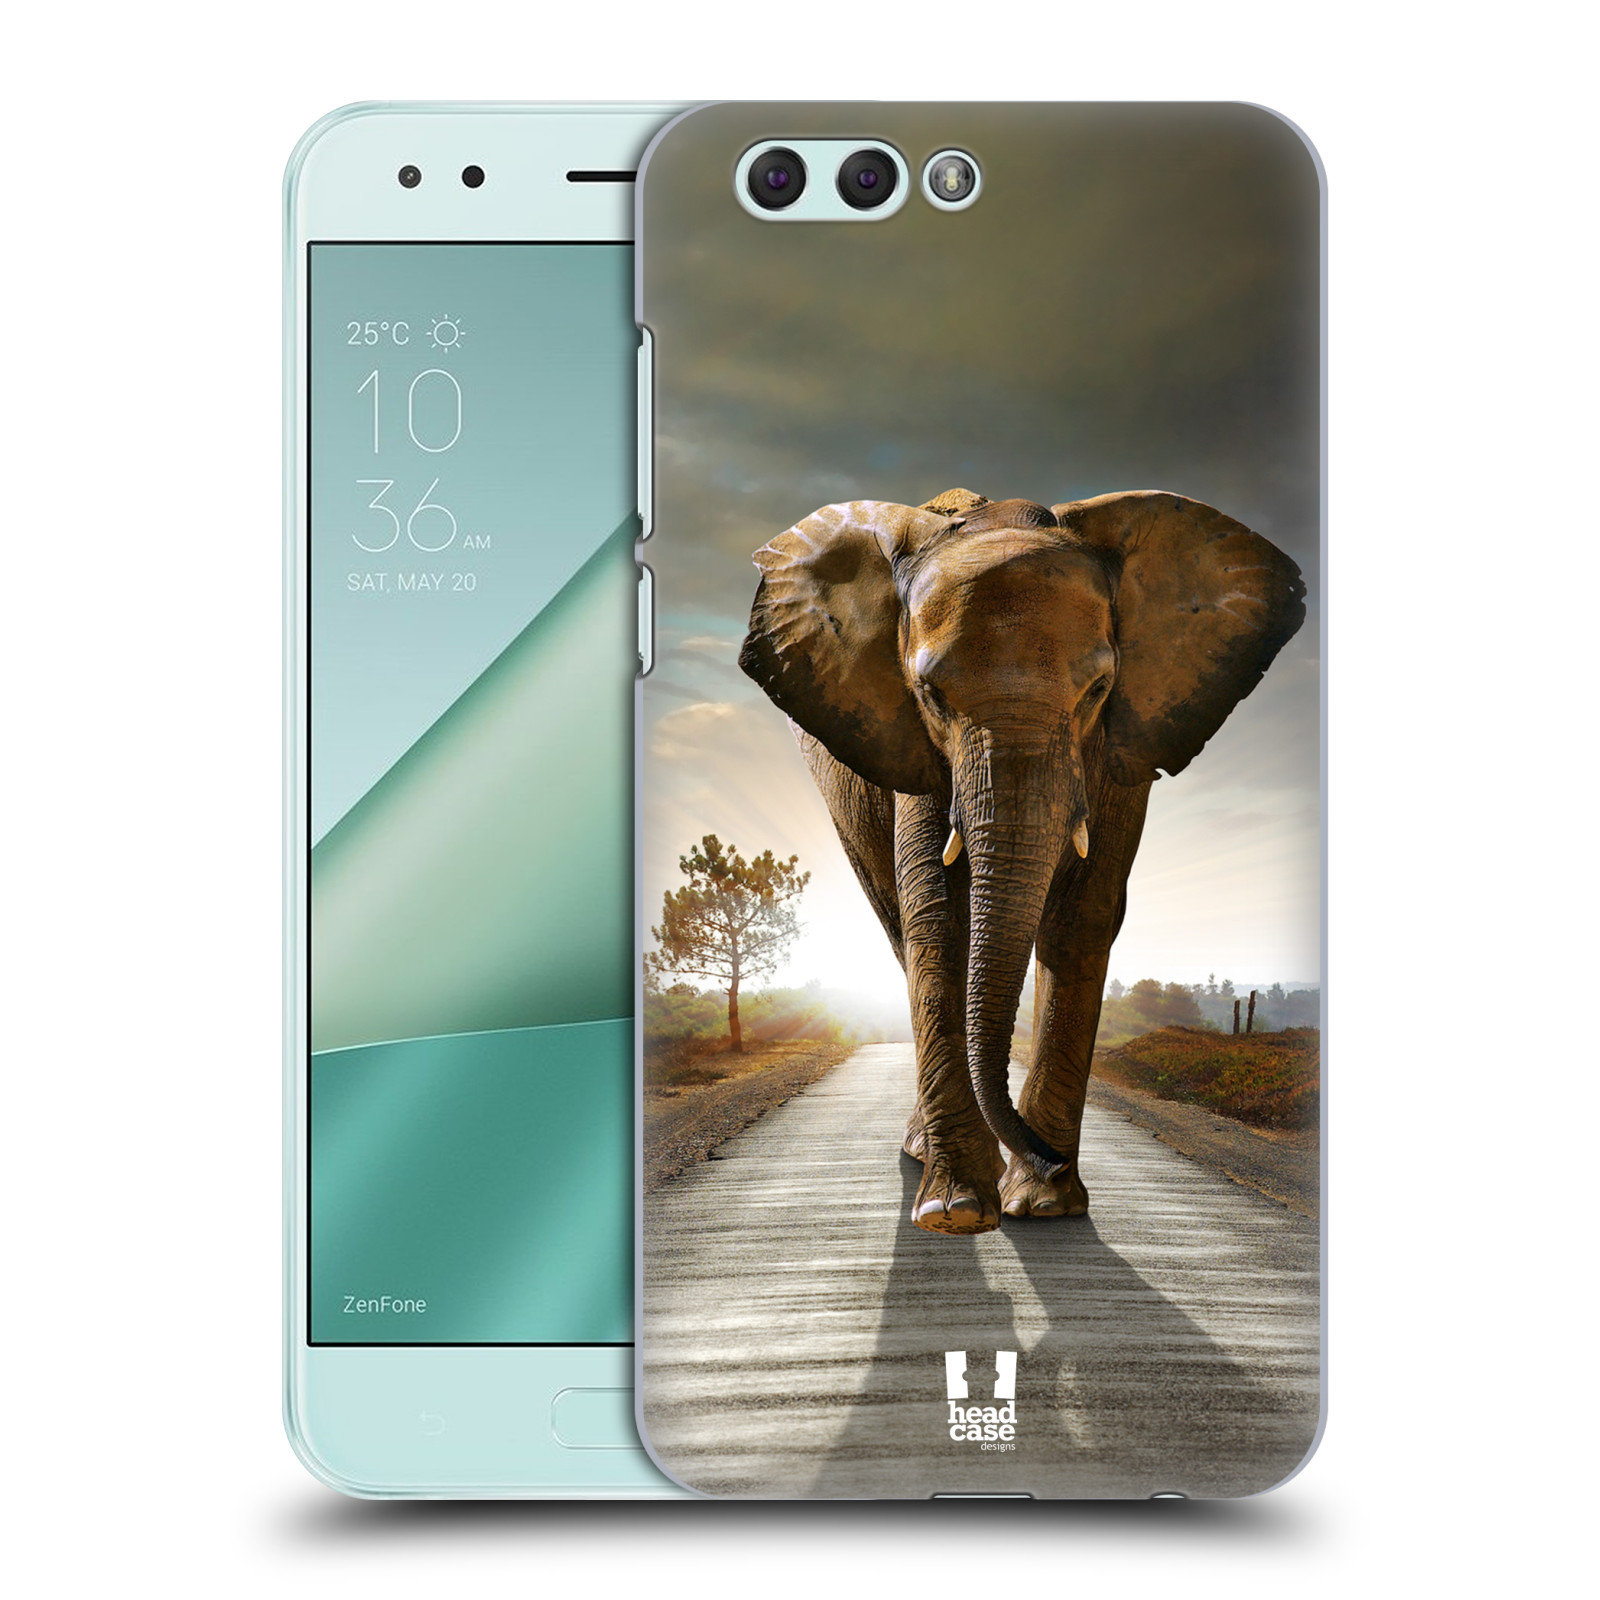 HEAD CASE plastový obal na mobil Asus Zenfone 4 ZE554KL vzor Divočina, Divoký život a zvířata foto AFRIKA KRÁČEJÍCI SLON